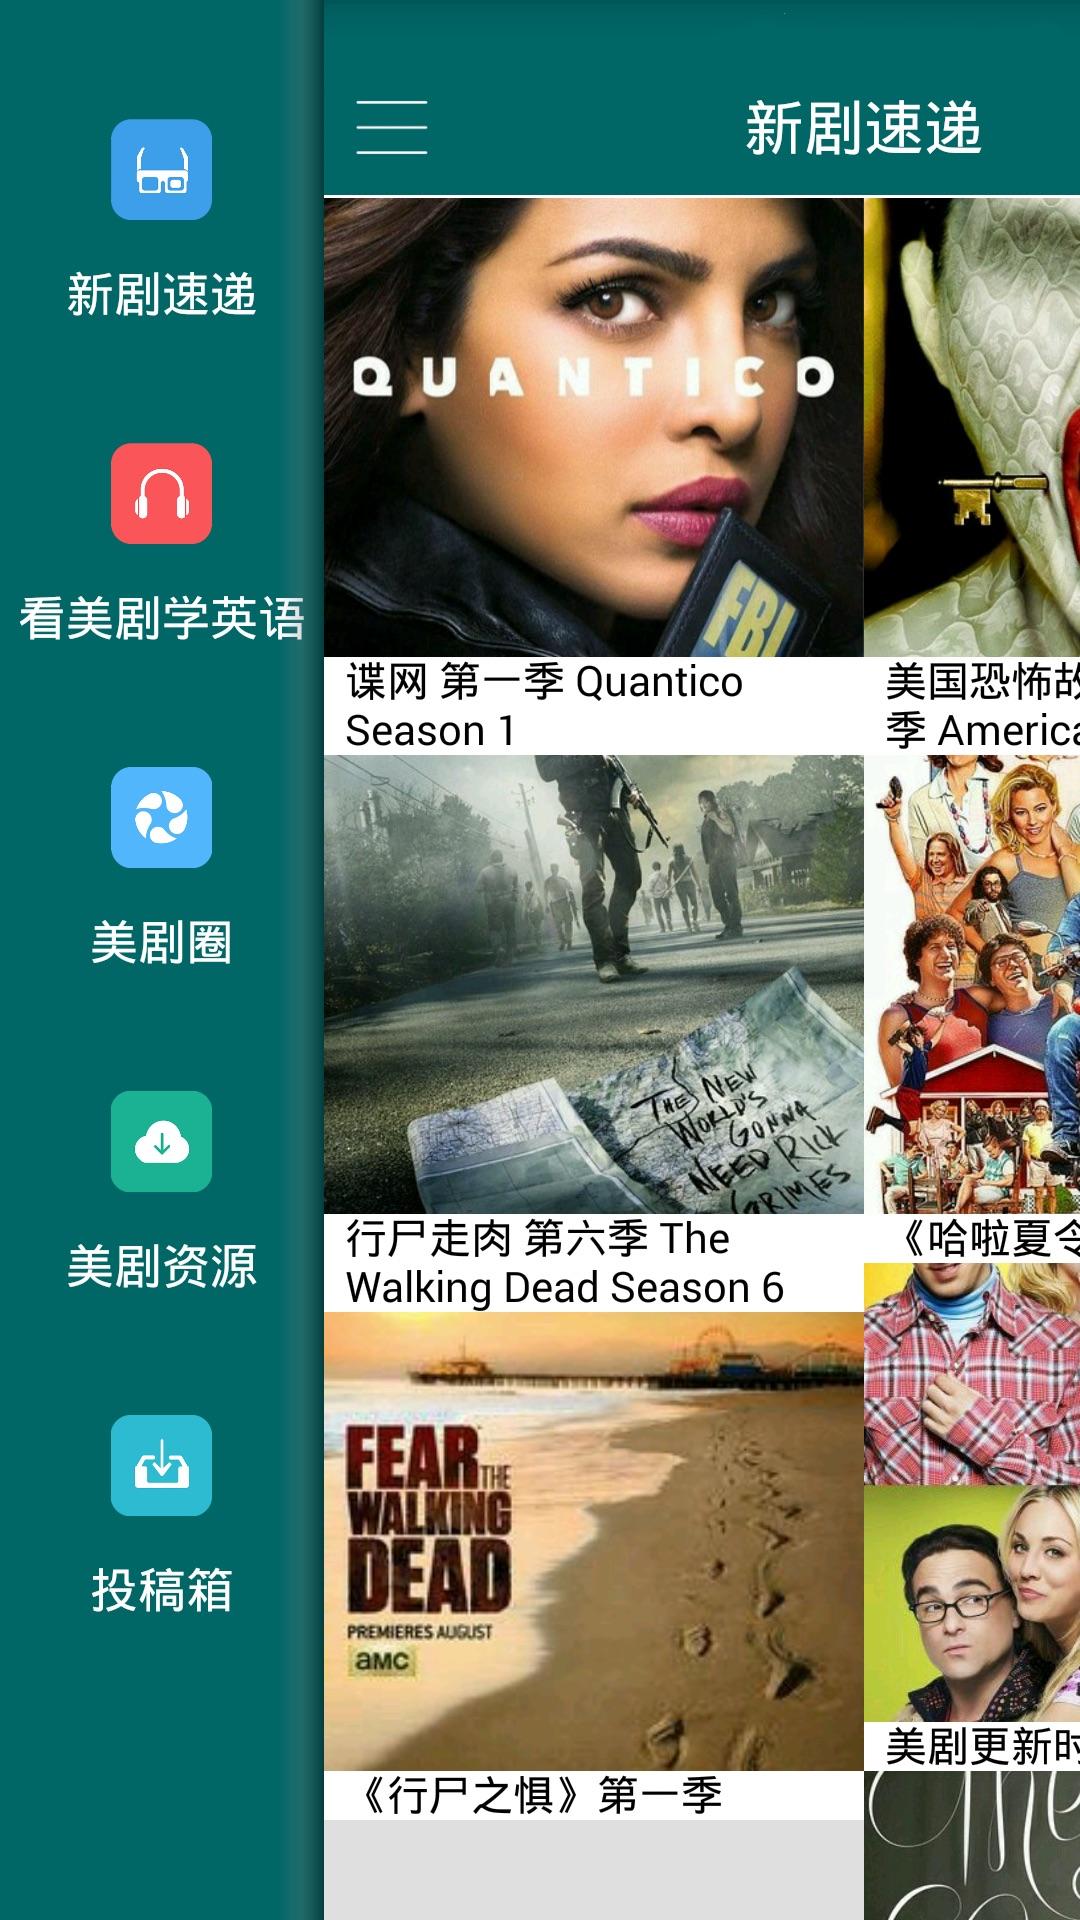 美剧天堂安卓版 Android v1.0.11 官方版下载 